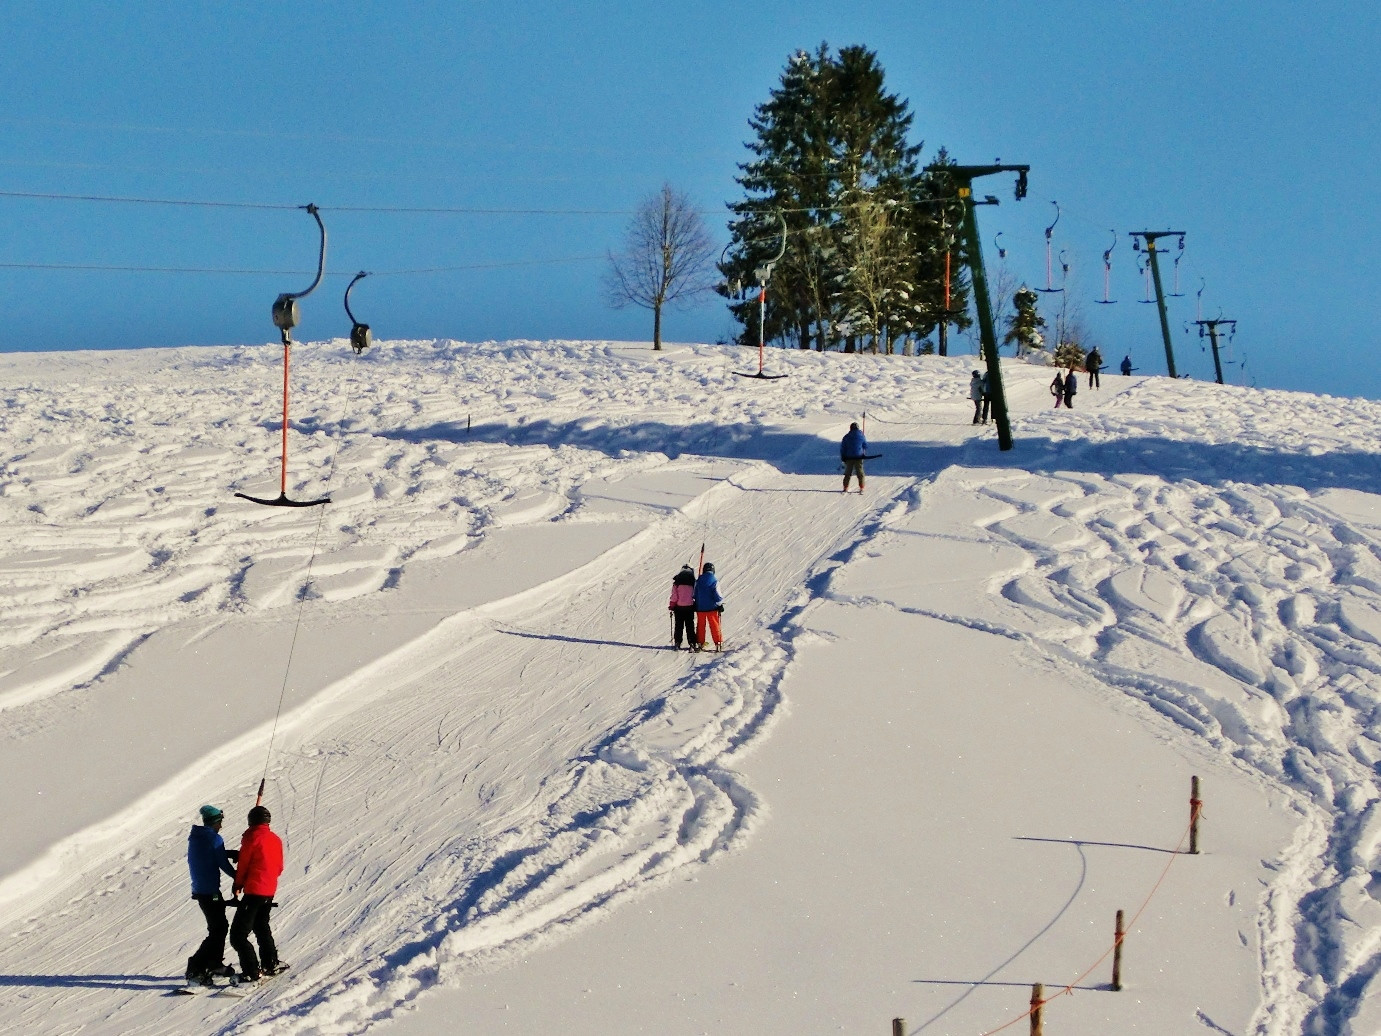  Skifahrer werden bei blauen Himmel am Skilift den schneebedeckten Berg hochgezogen - das Bild wird mit Klick vergrößert 